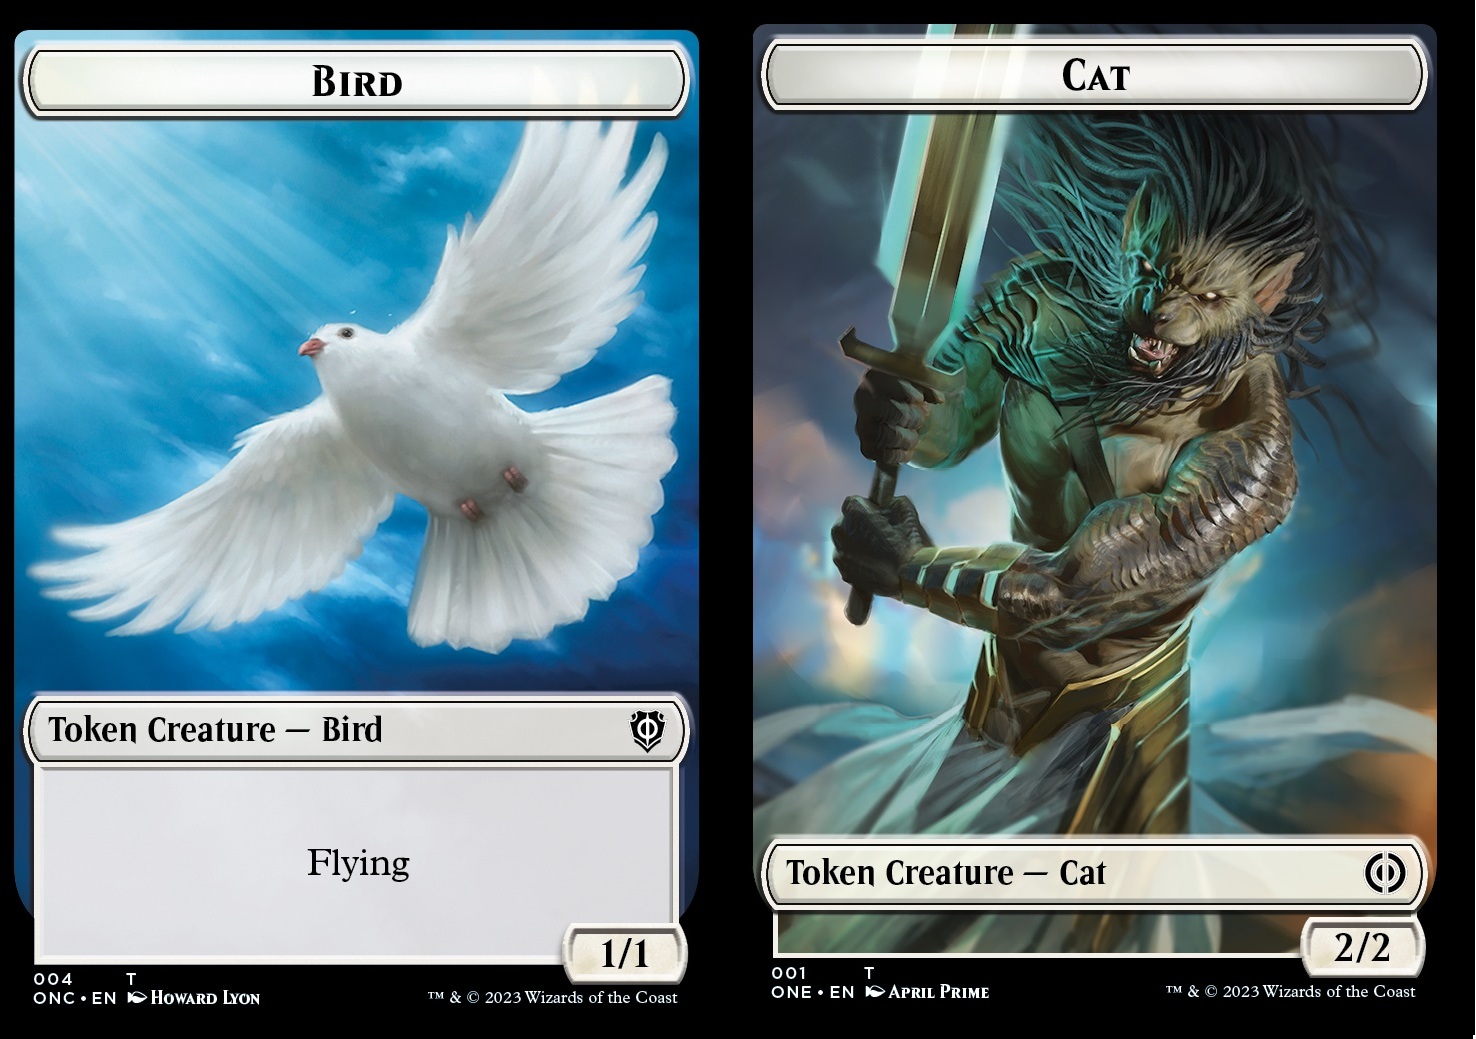 Bird Token (W 1/1 Flying) // Cat Token (W 2/2)